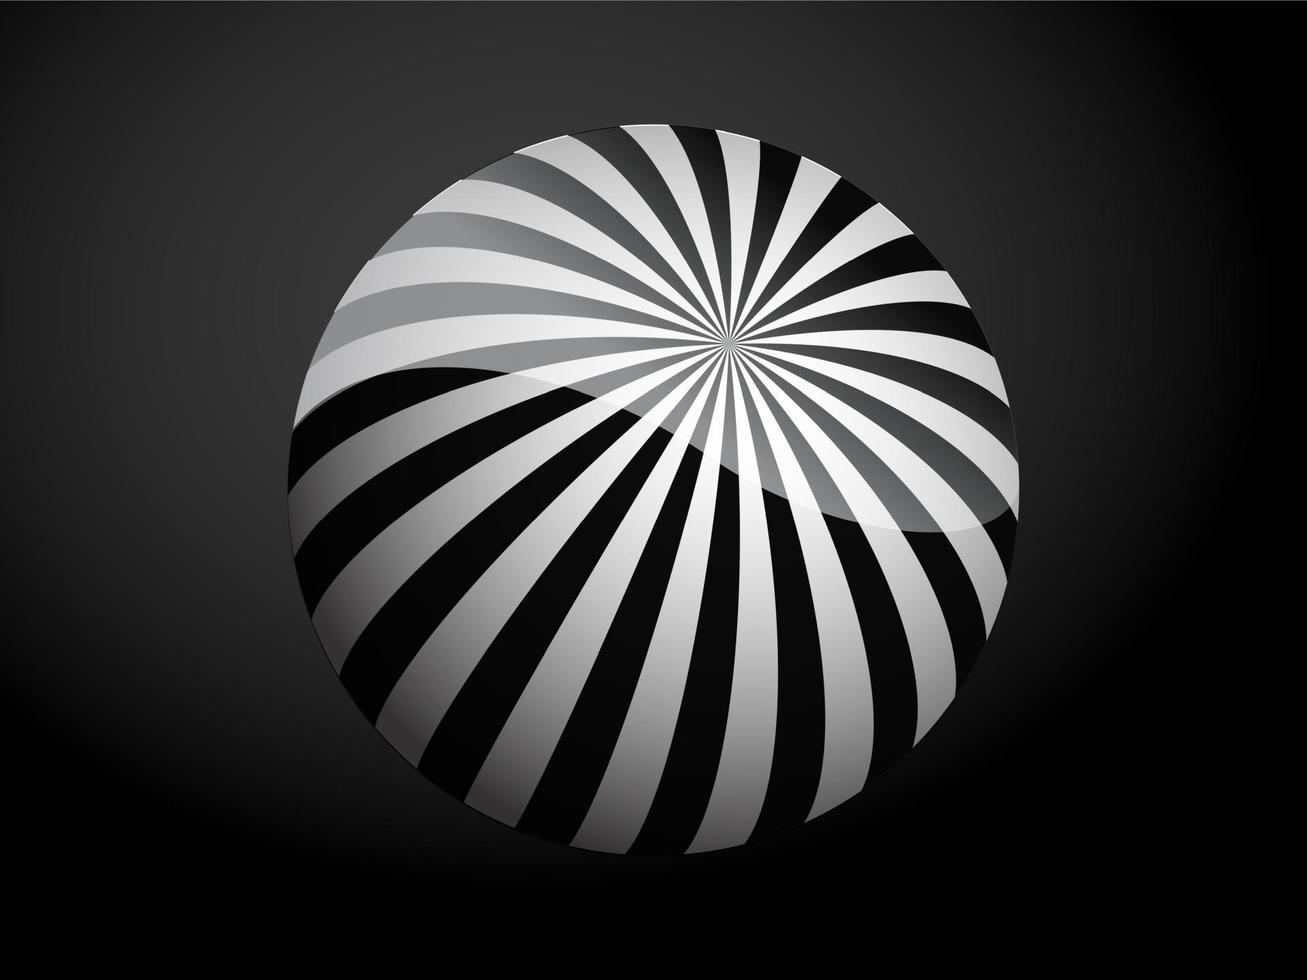 cubierta de patrón abstracto bola 3d en blanco y negro. ilustración vectorial sobre fondo oscuro. vector